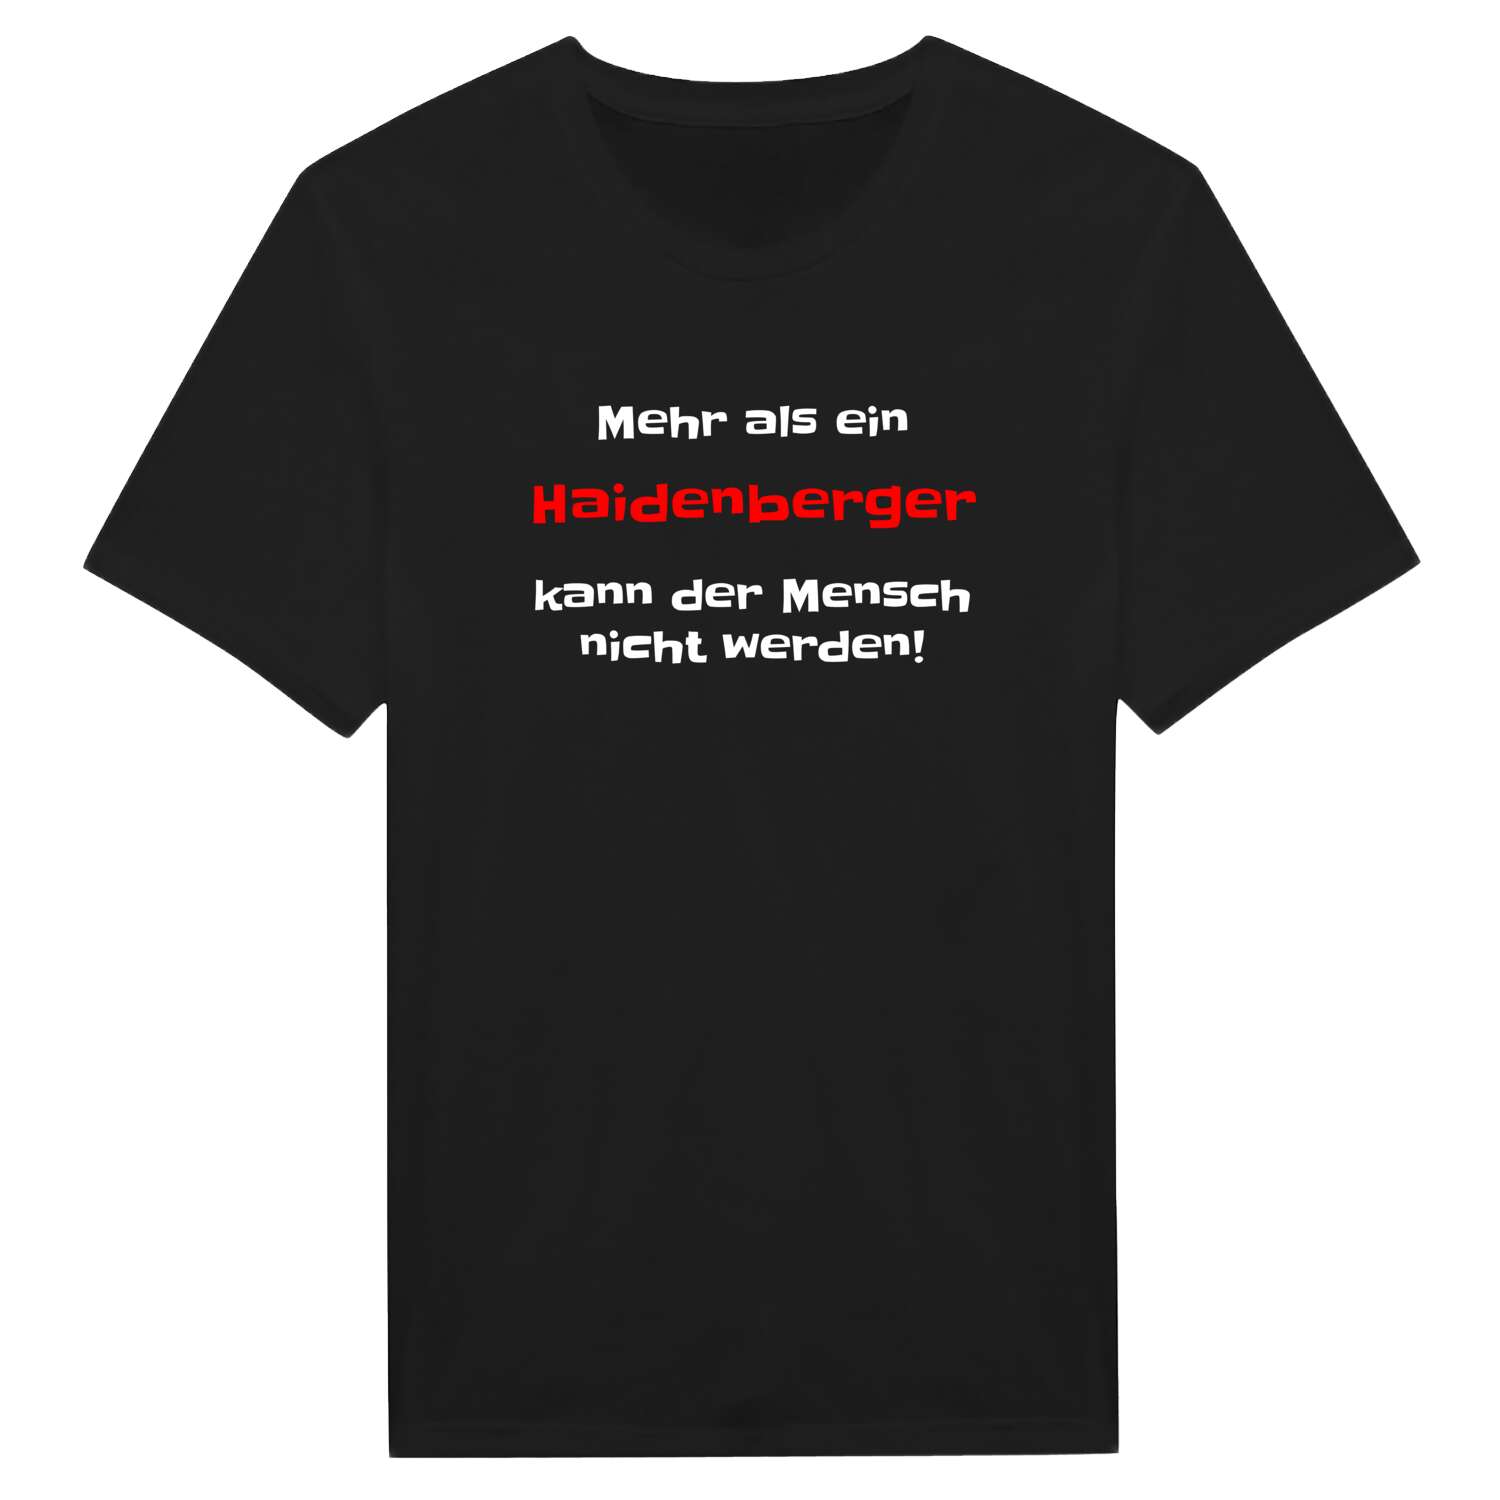 Haidenberg T-Shirt »Mehr als ein«